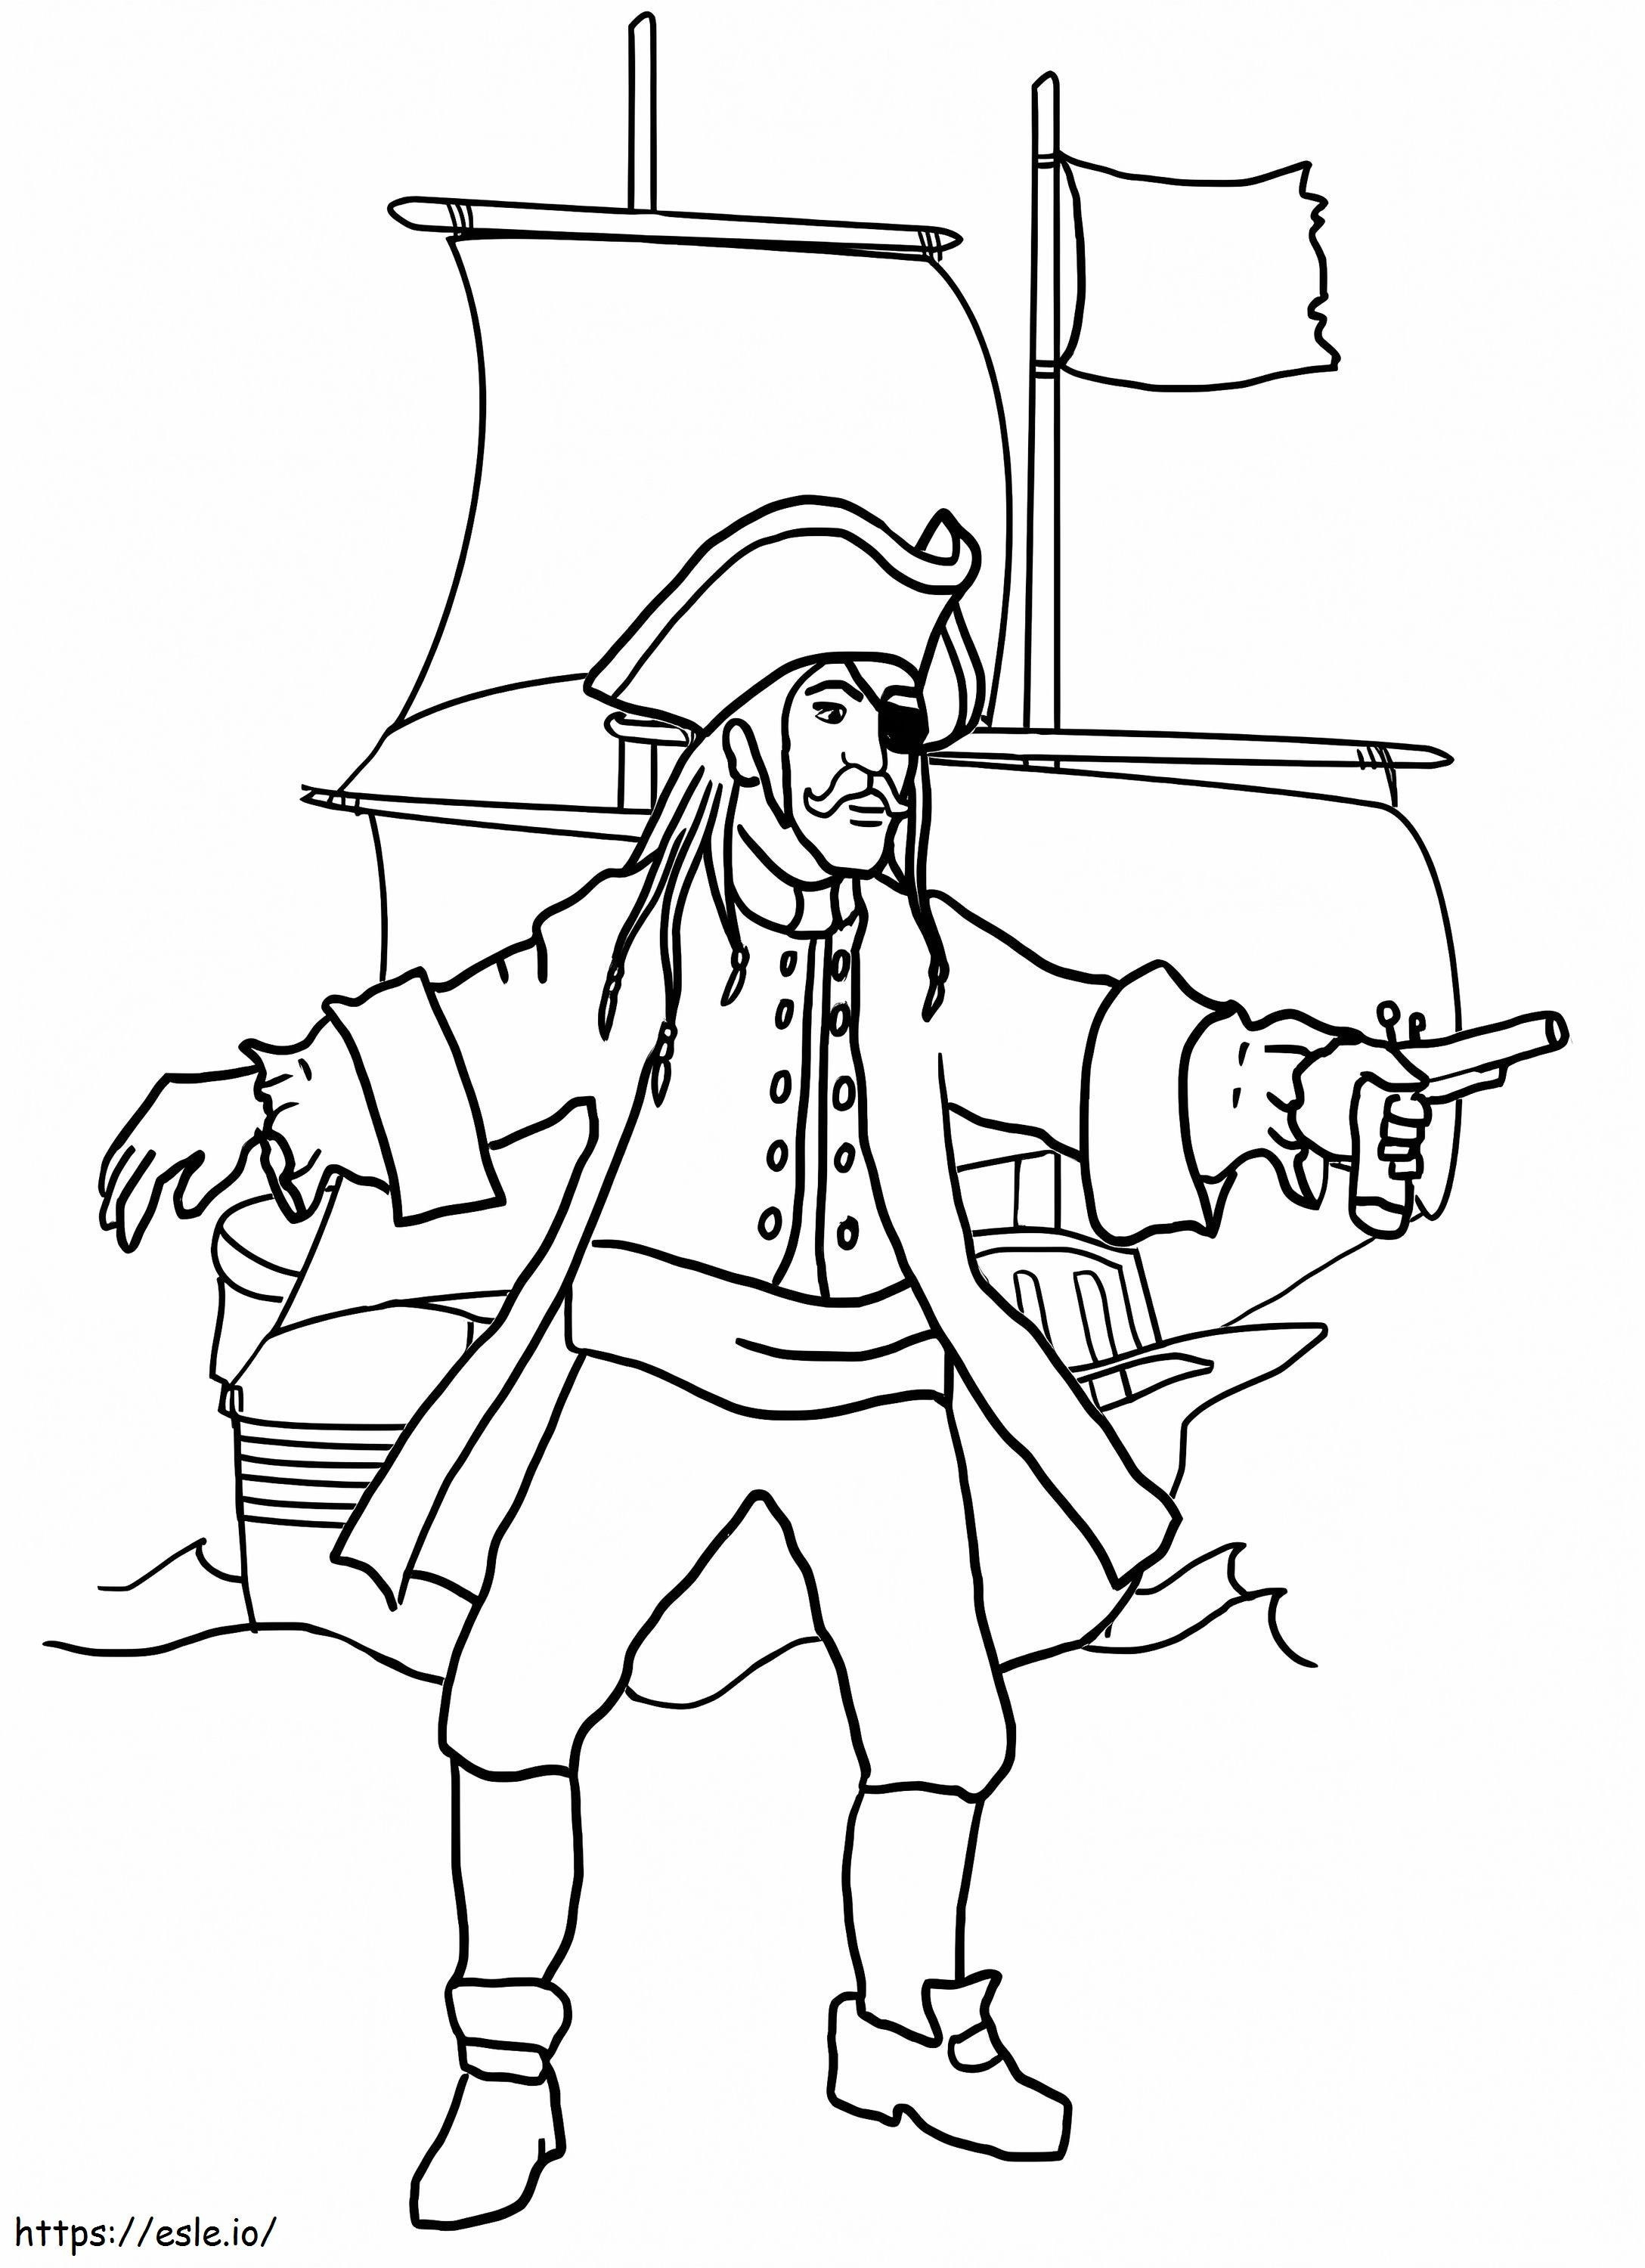 Pirat und Piratenschiff ausmalbilder